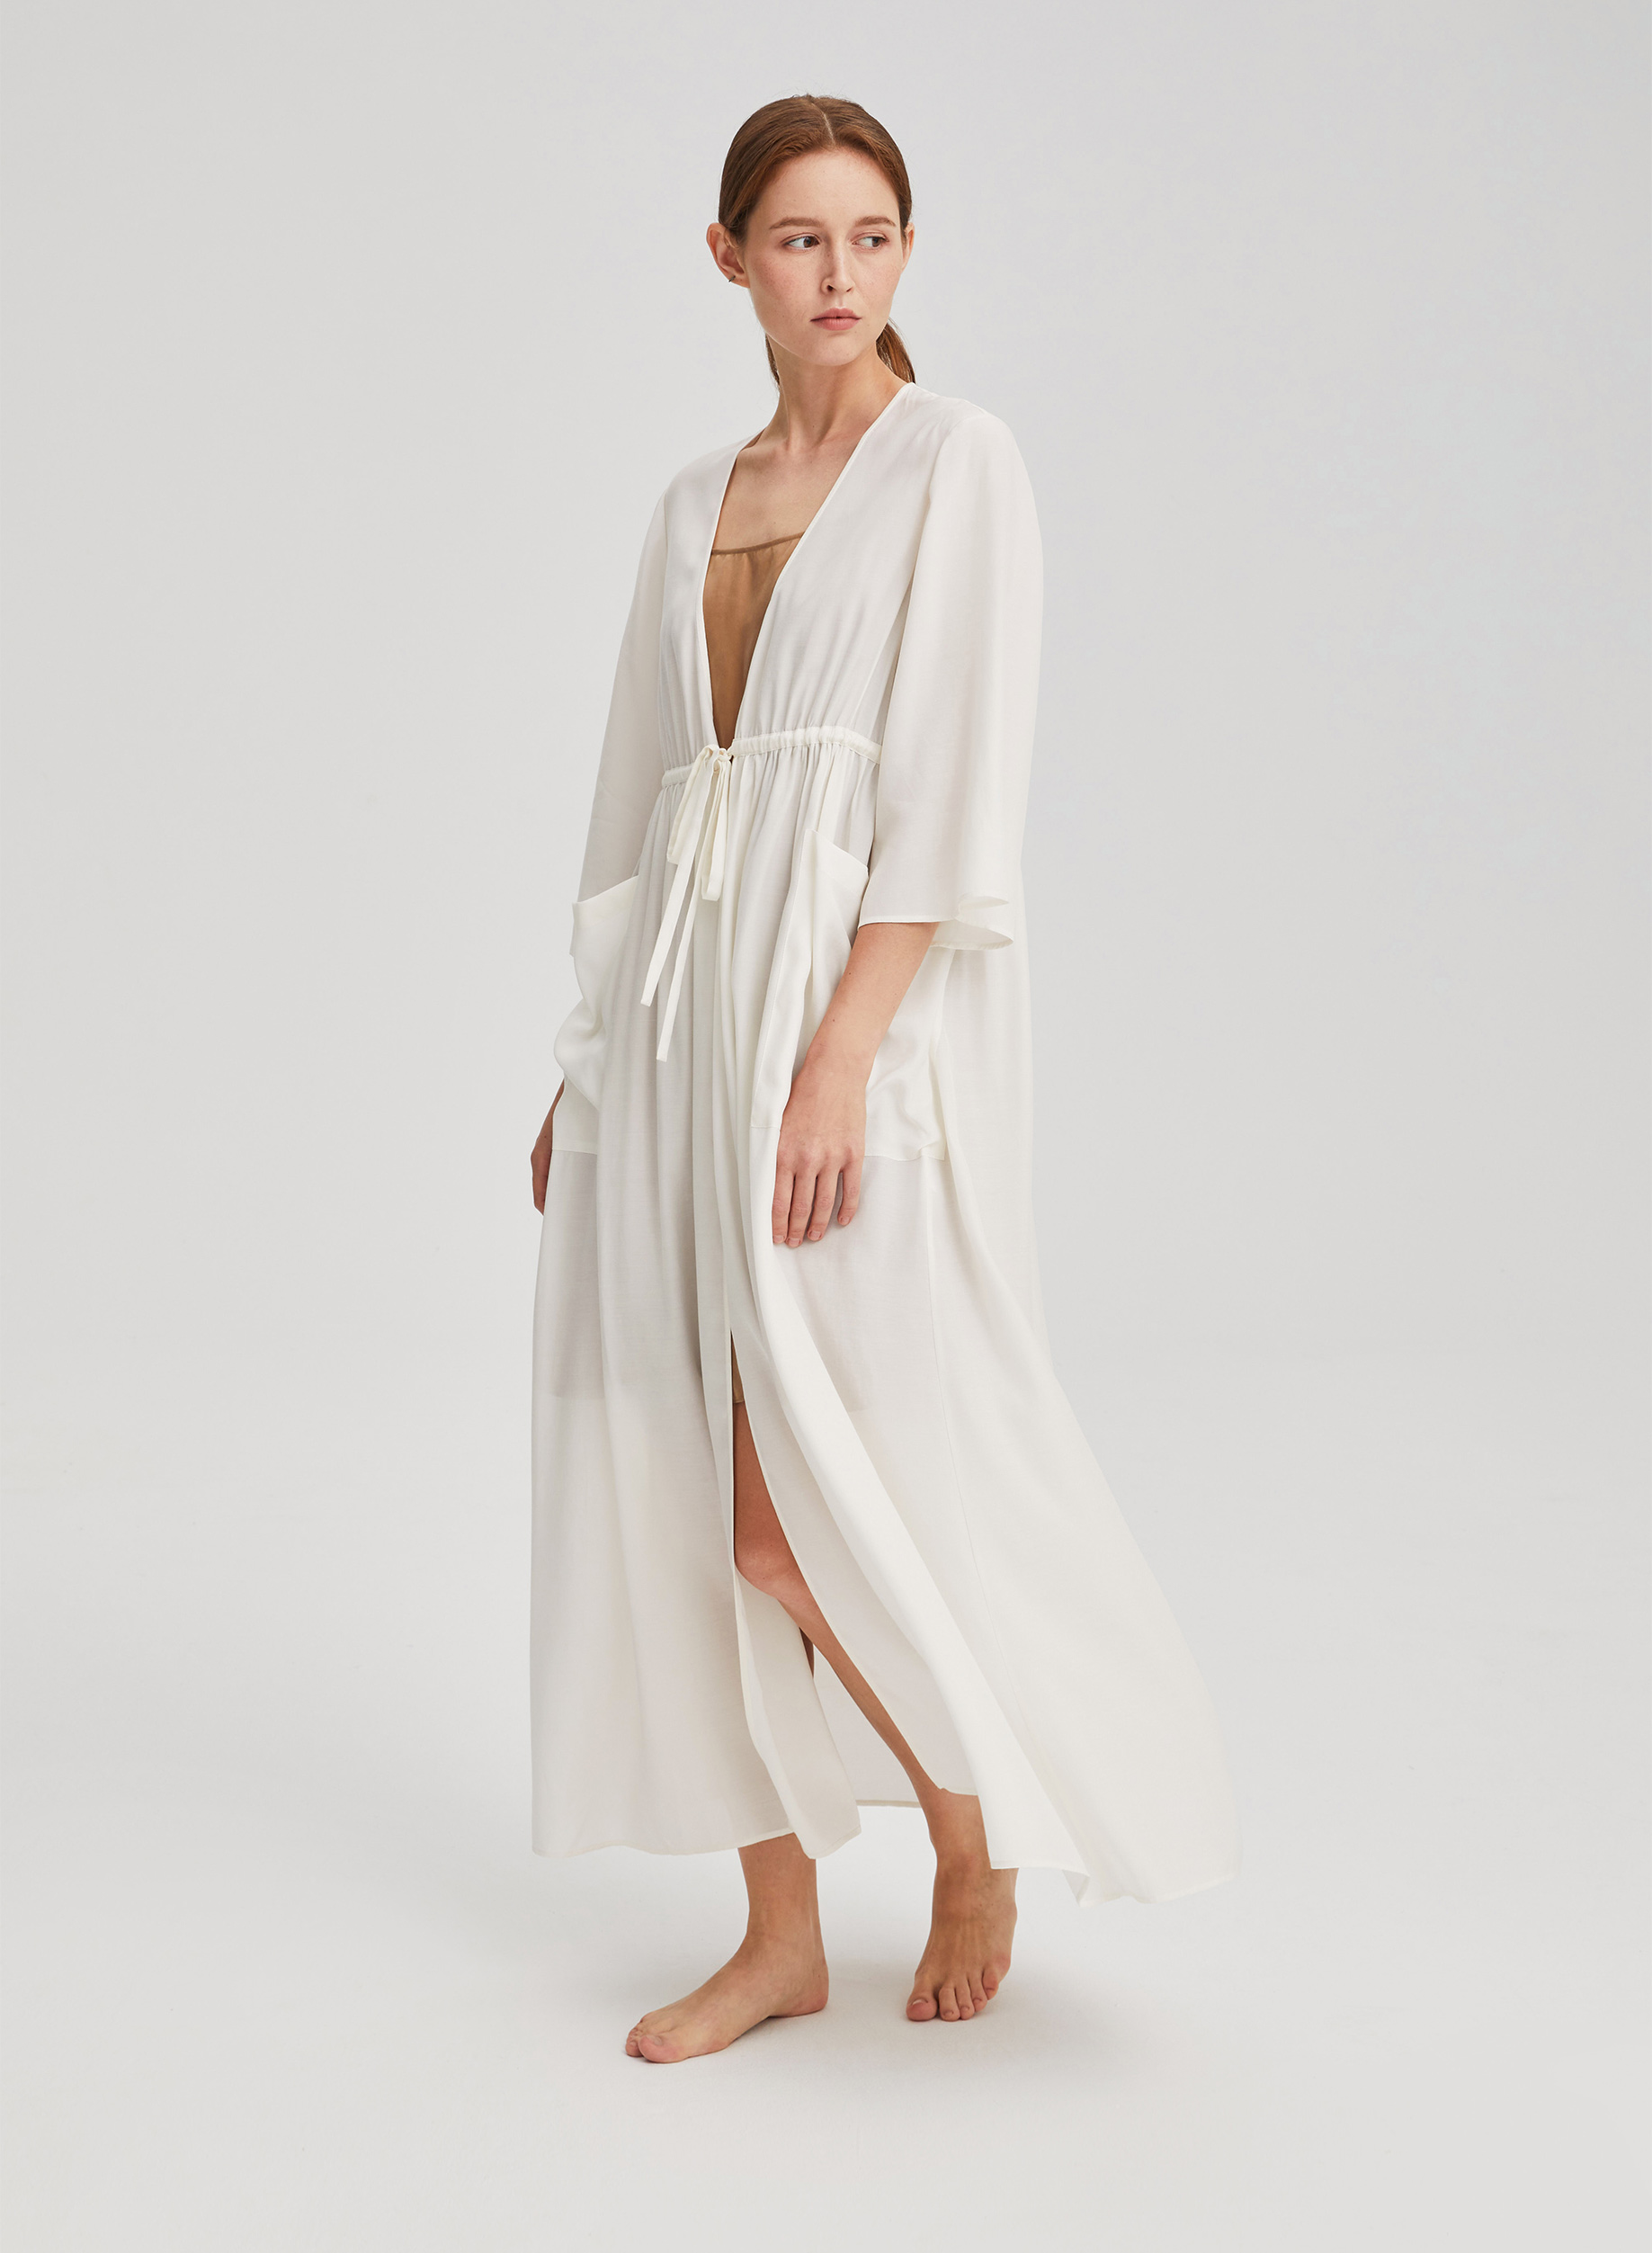 White Classic Kimono Drawstring Robe | Trends in lifestyle